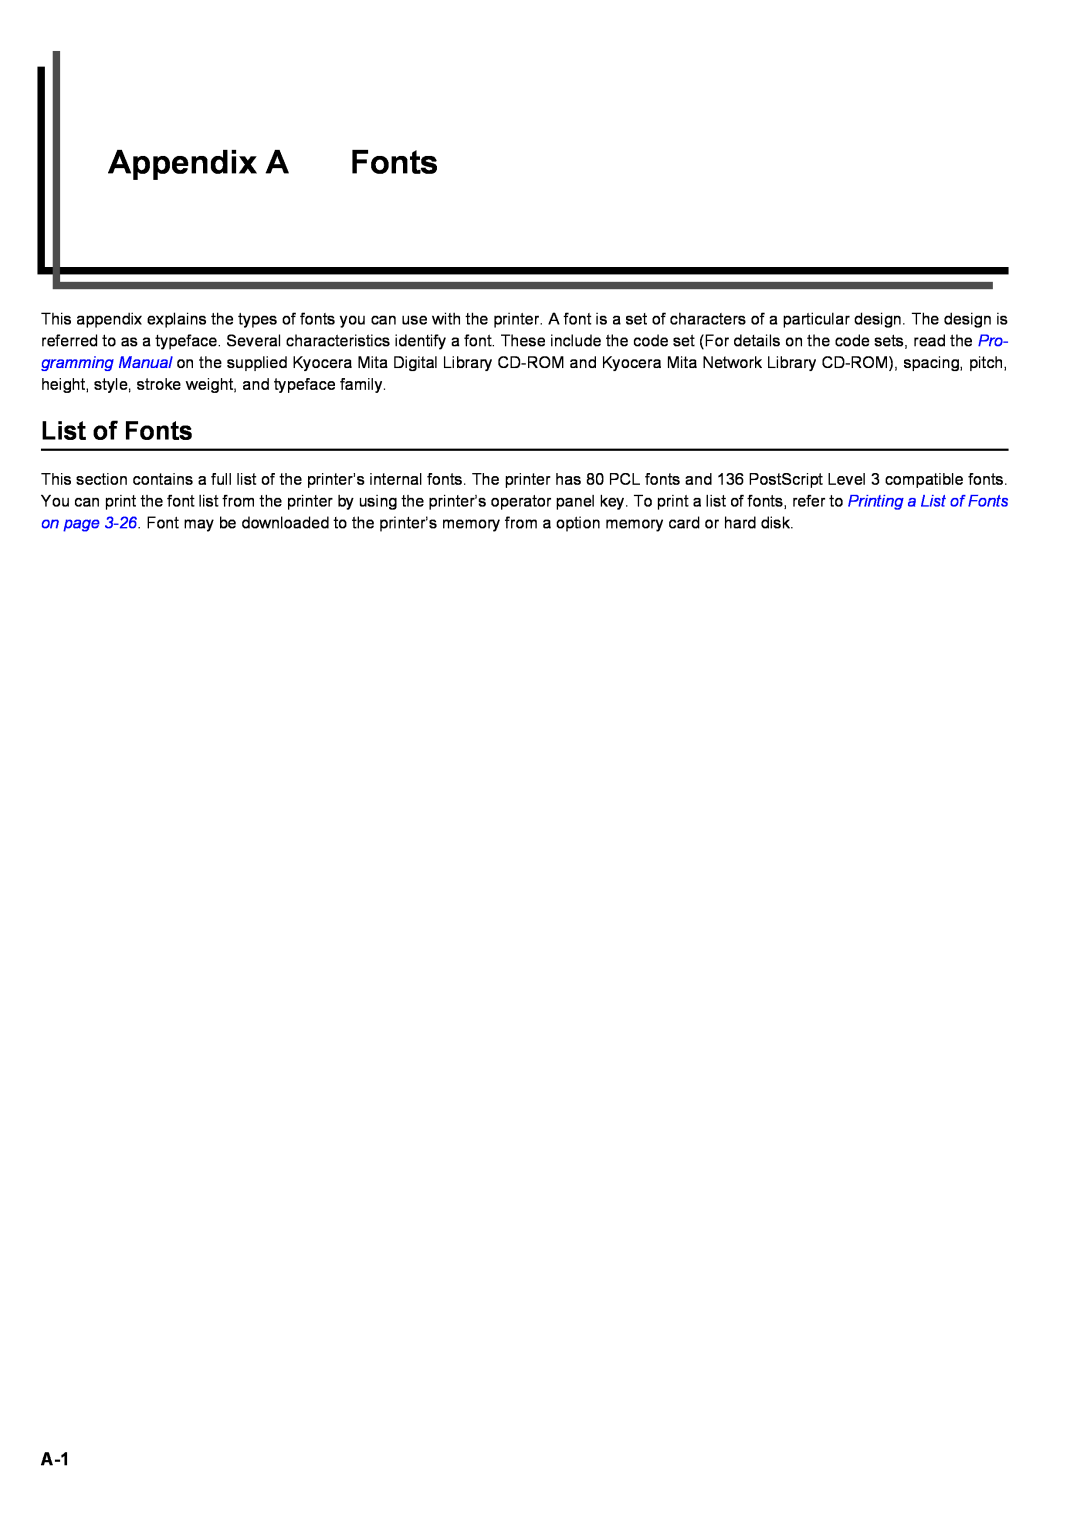 Kyocera S-9100DN manual Appendix A, List of Fonts 